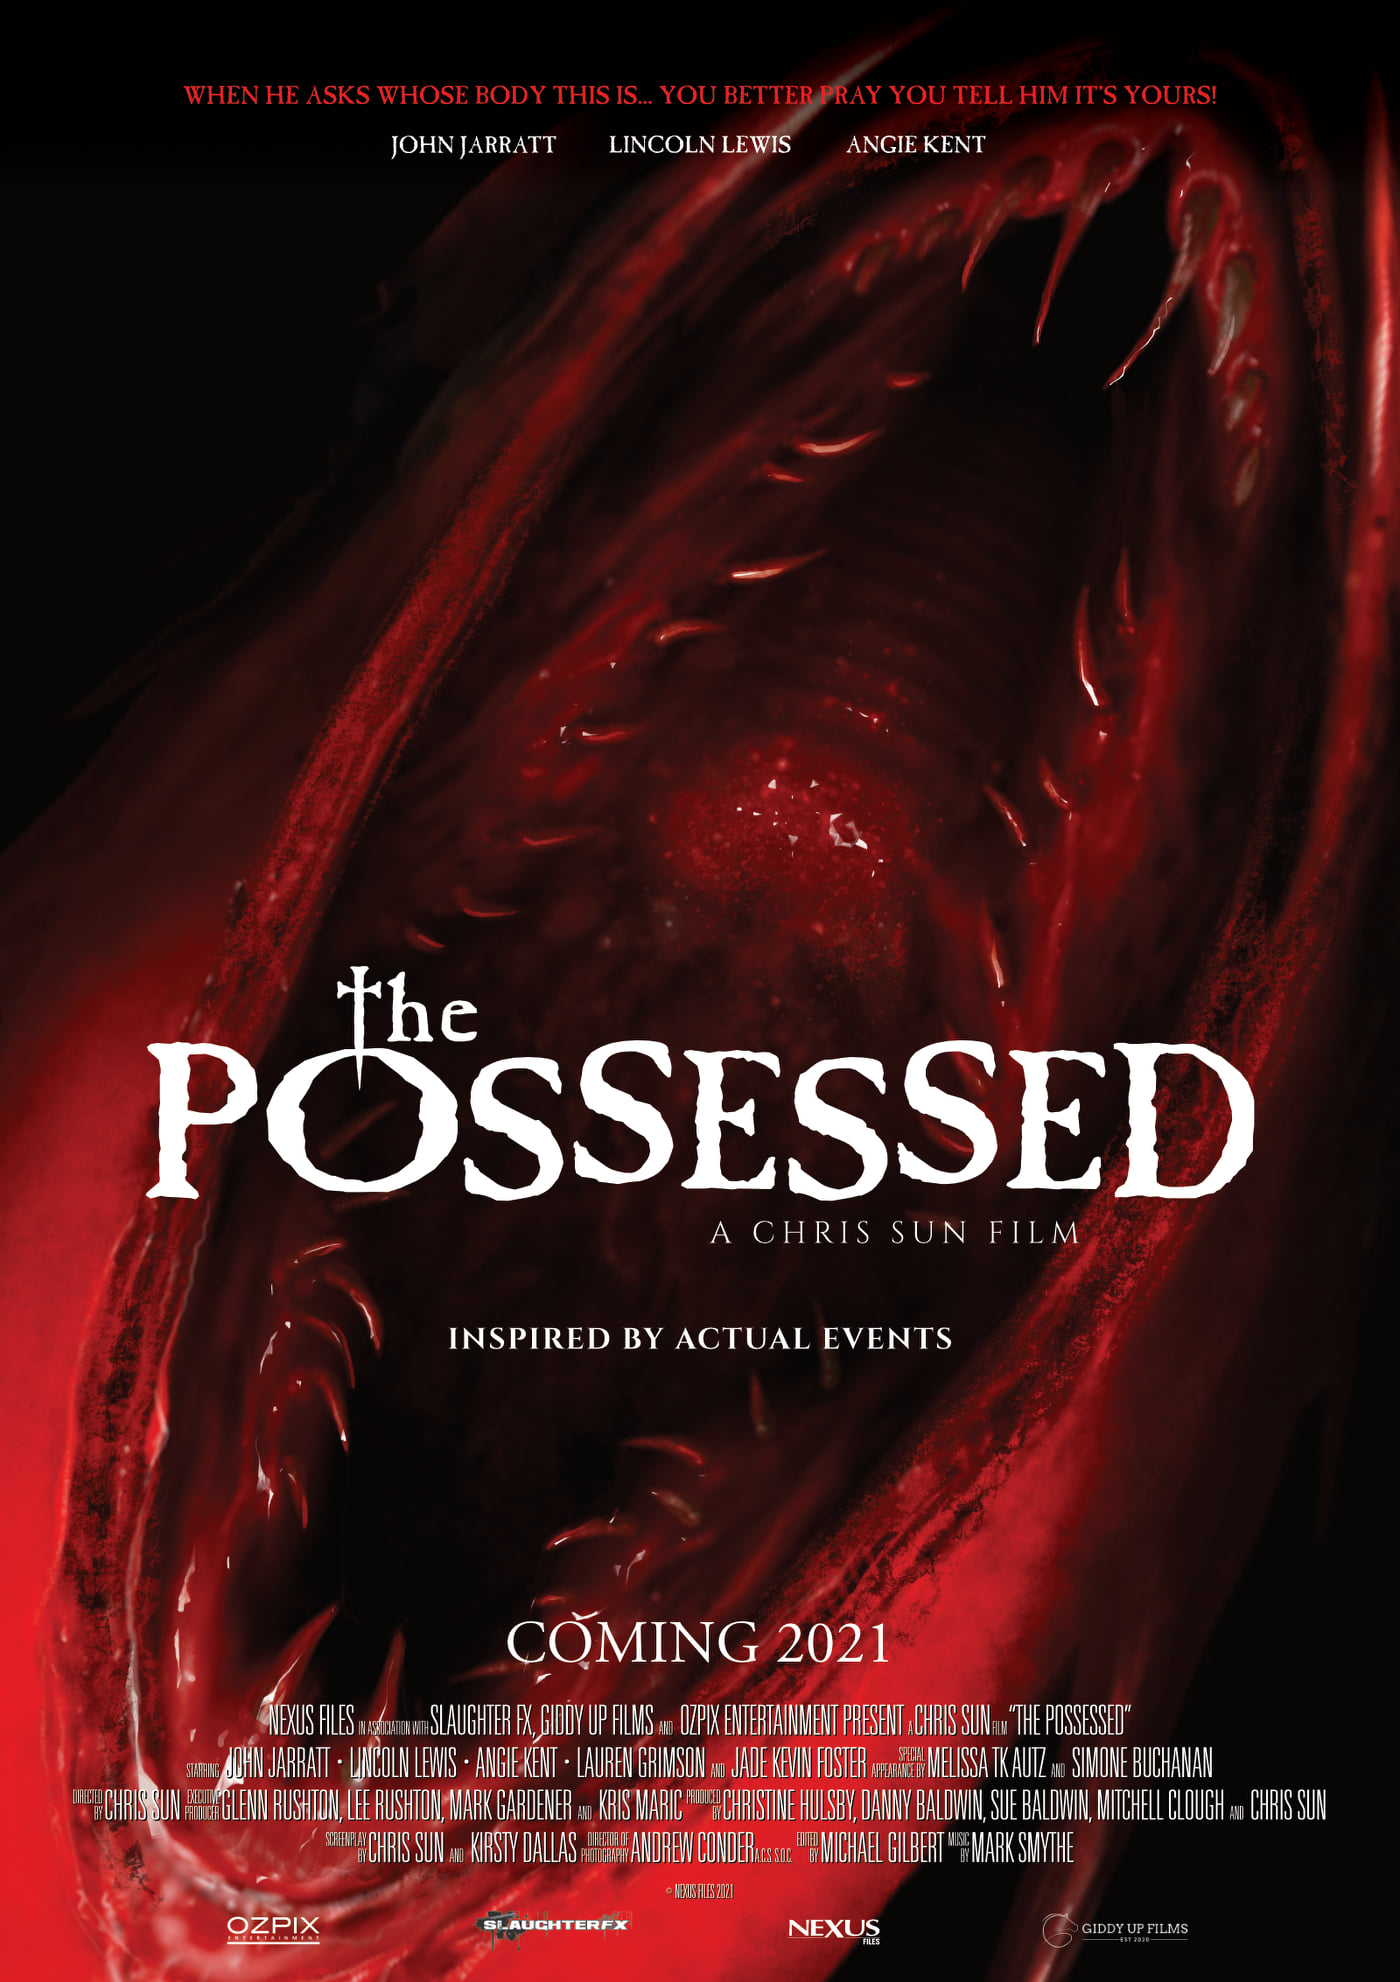 Inspirado em Histórias Reais de Possessões Demoníacas e Exorcismos - Teaser do Terror "The Possessed".